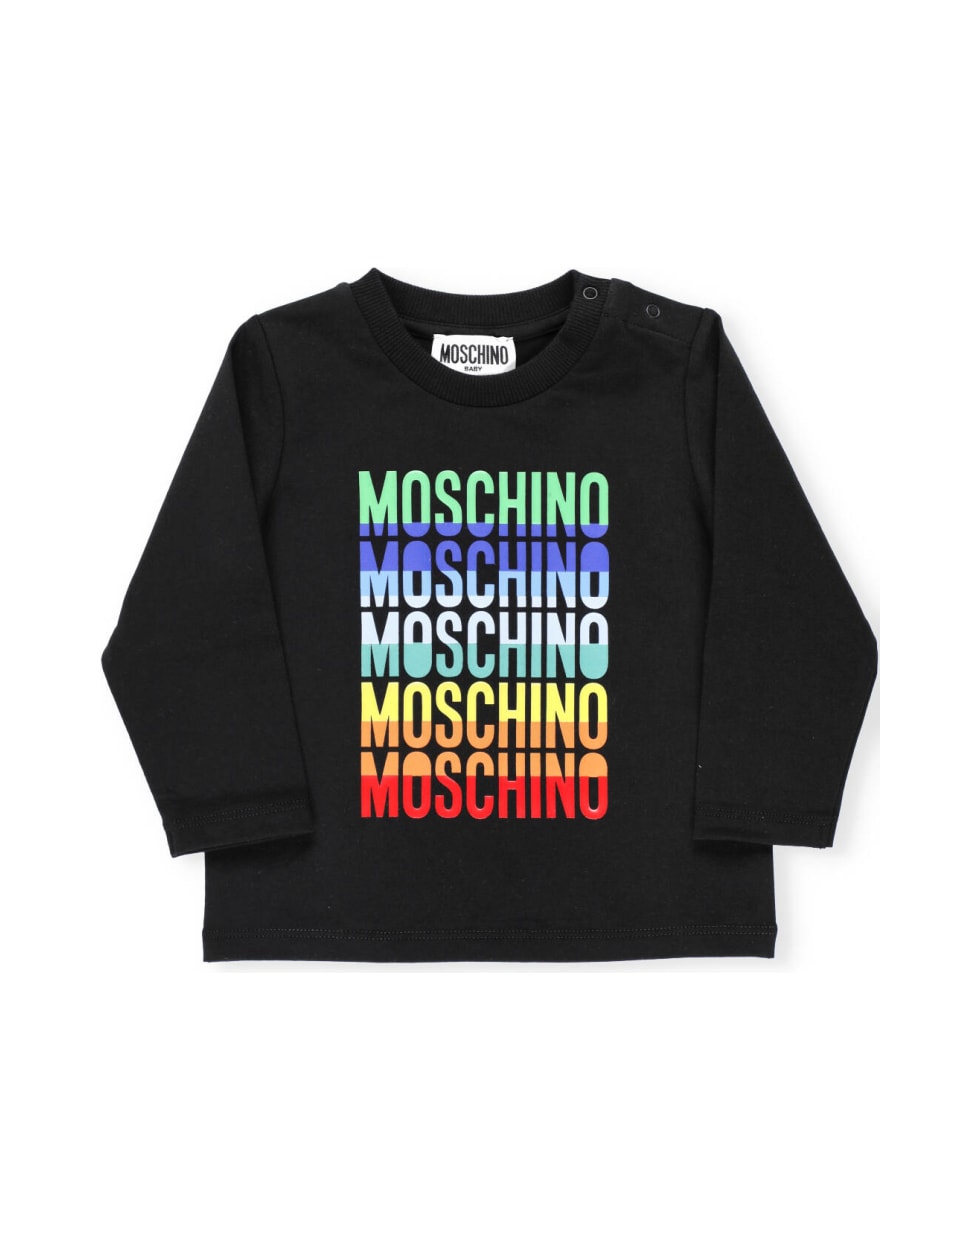 Moschino Printed T-shirt - Nero/black